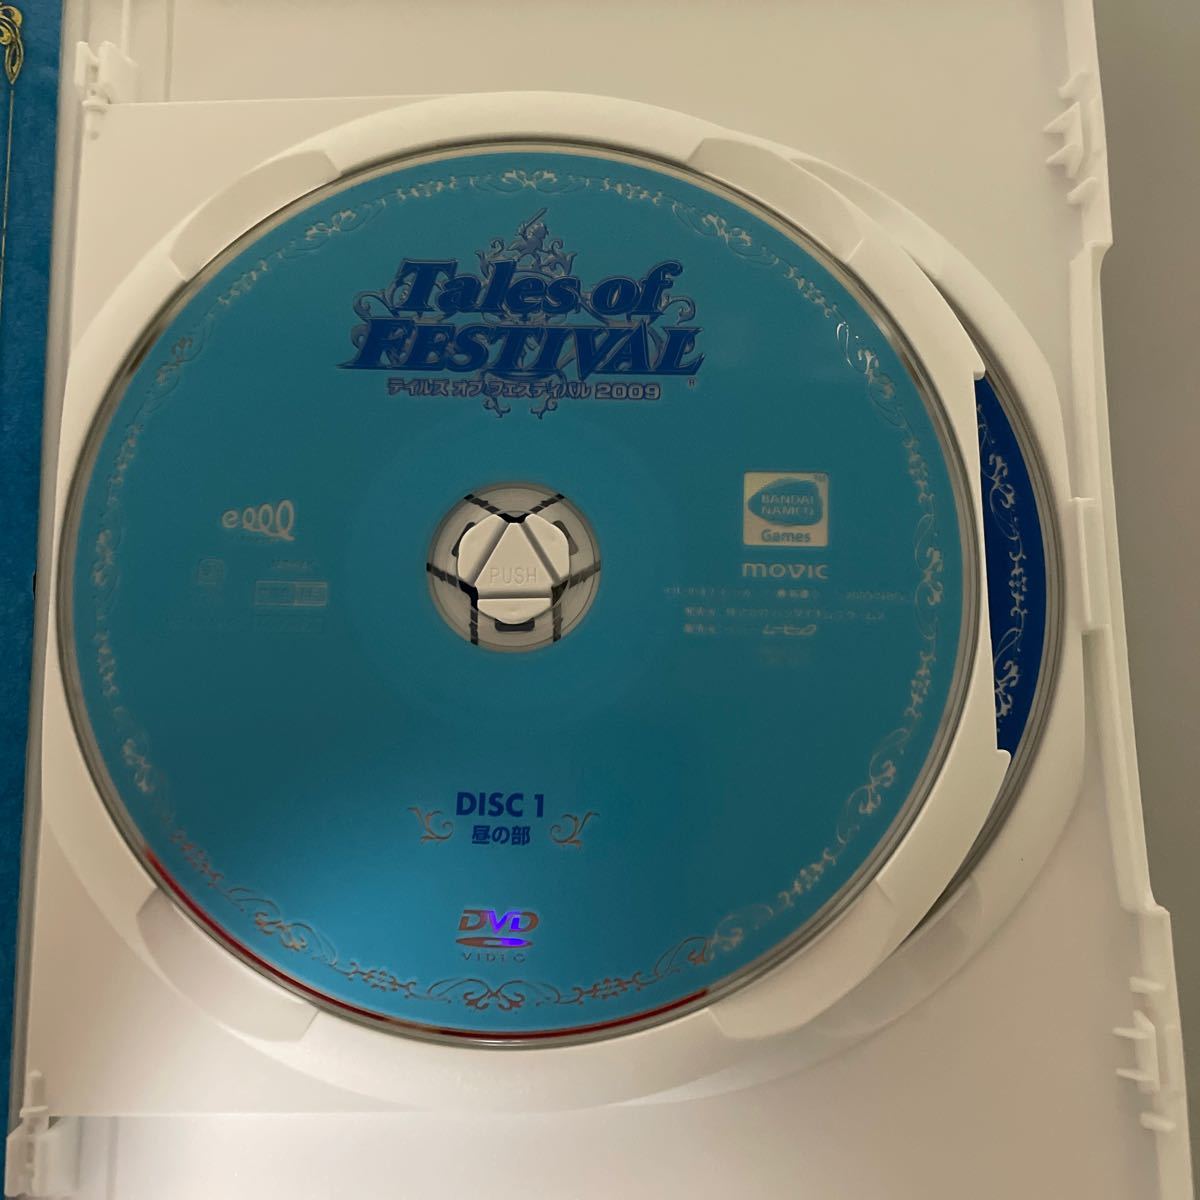 テイルズオブフェスティバル2009 DVD